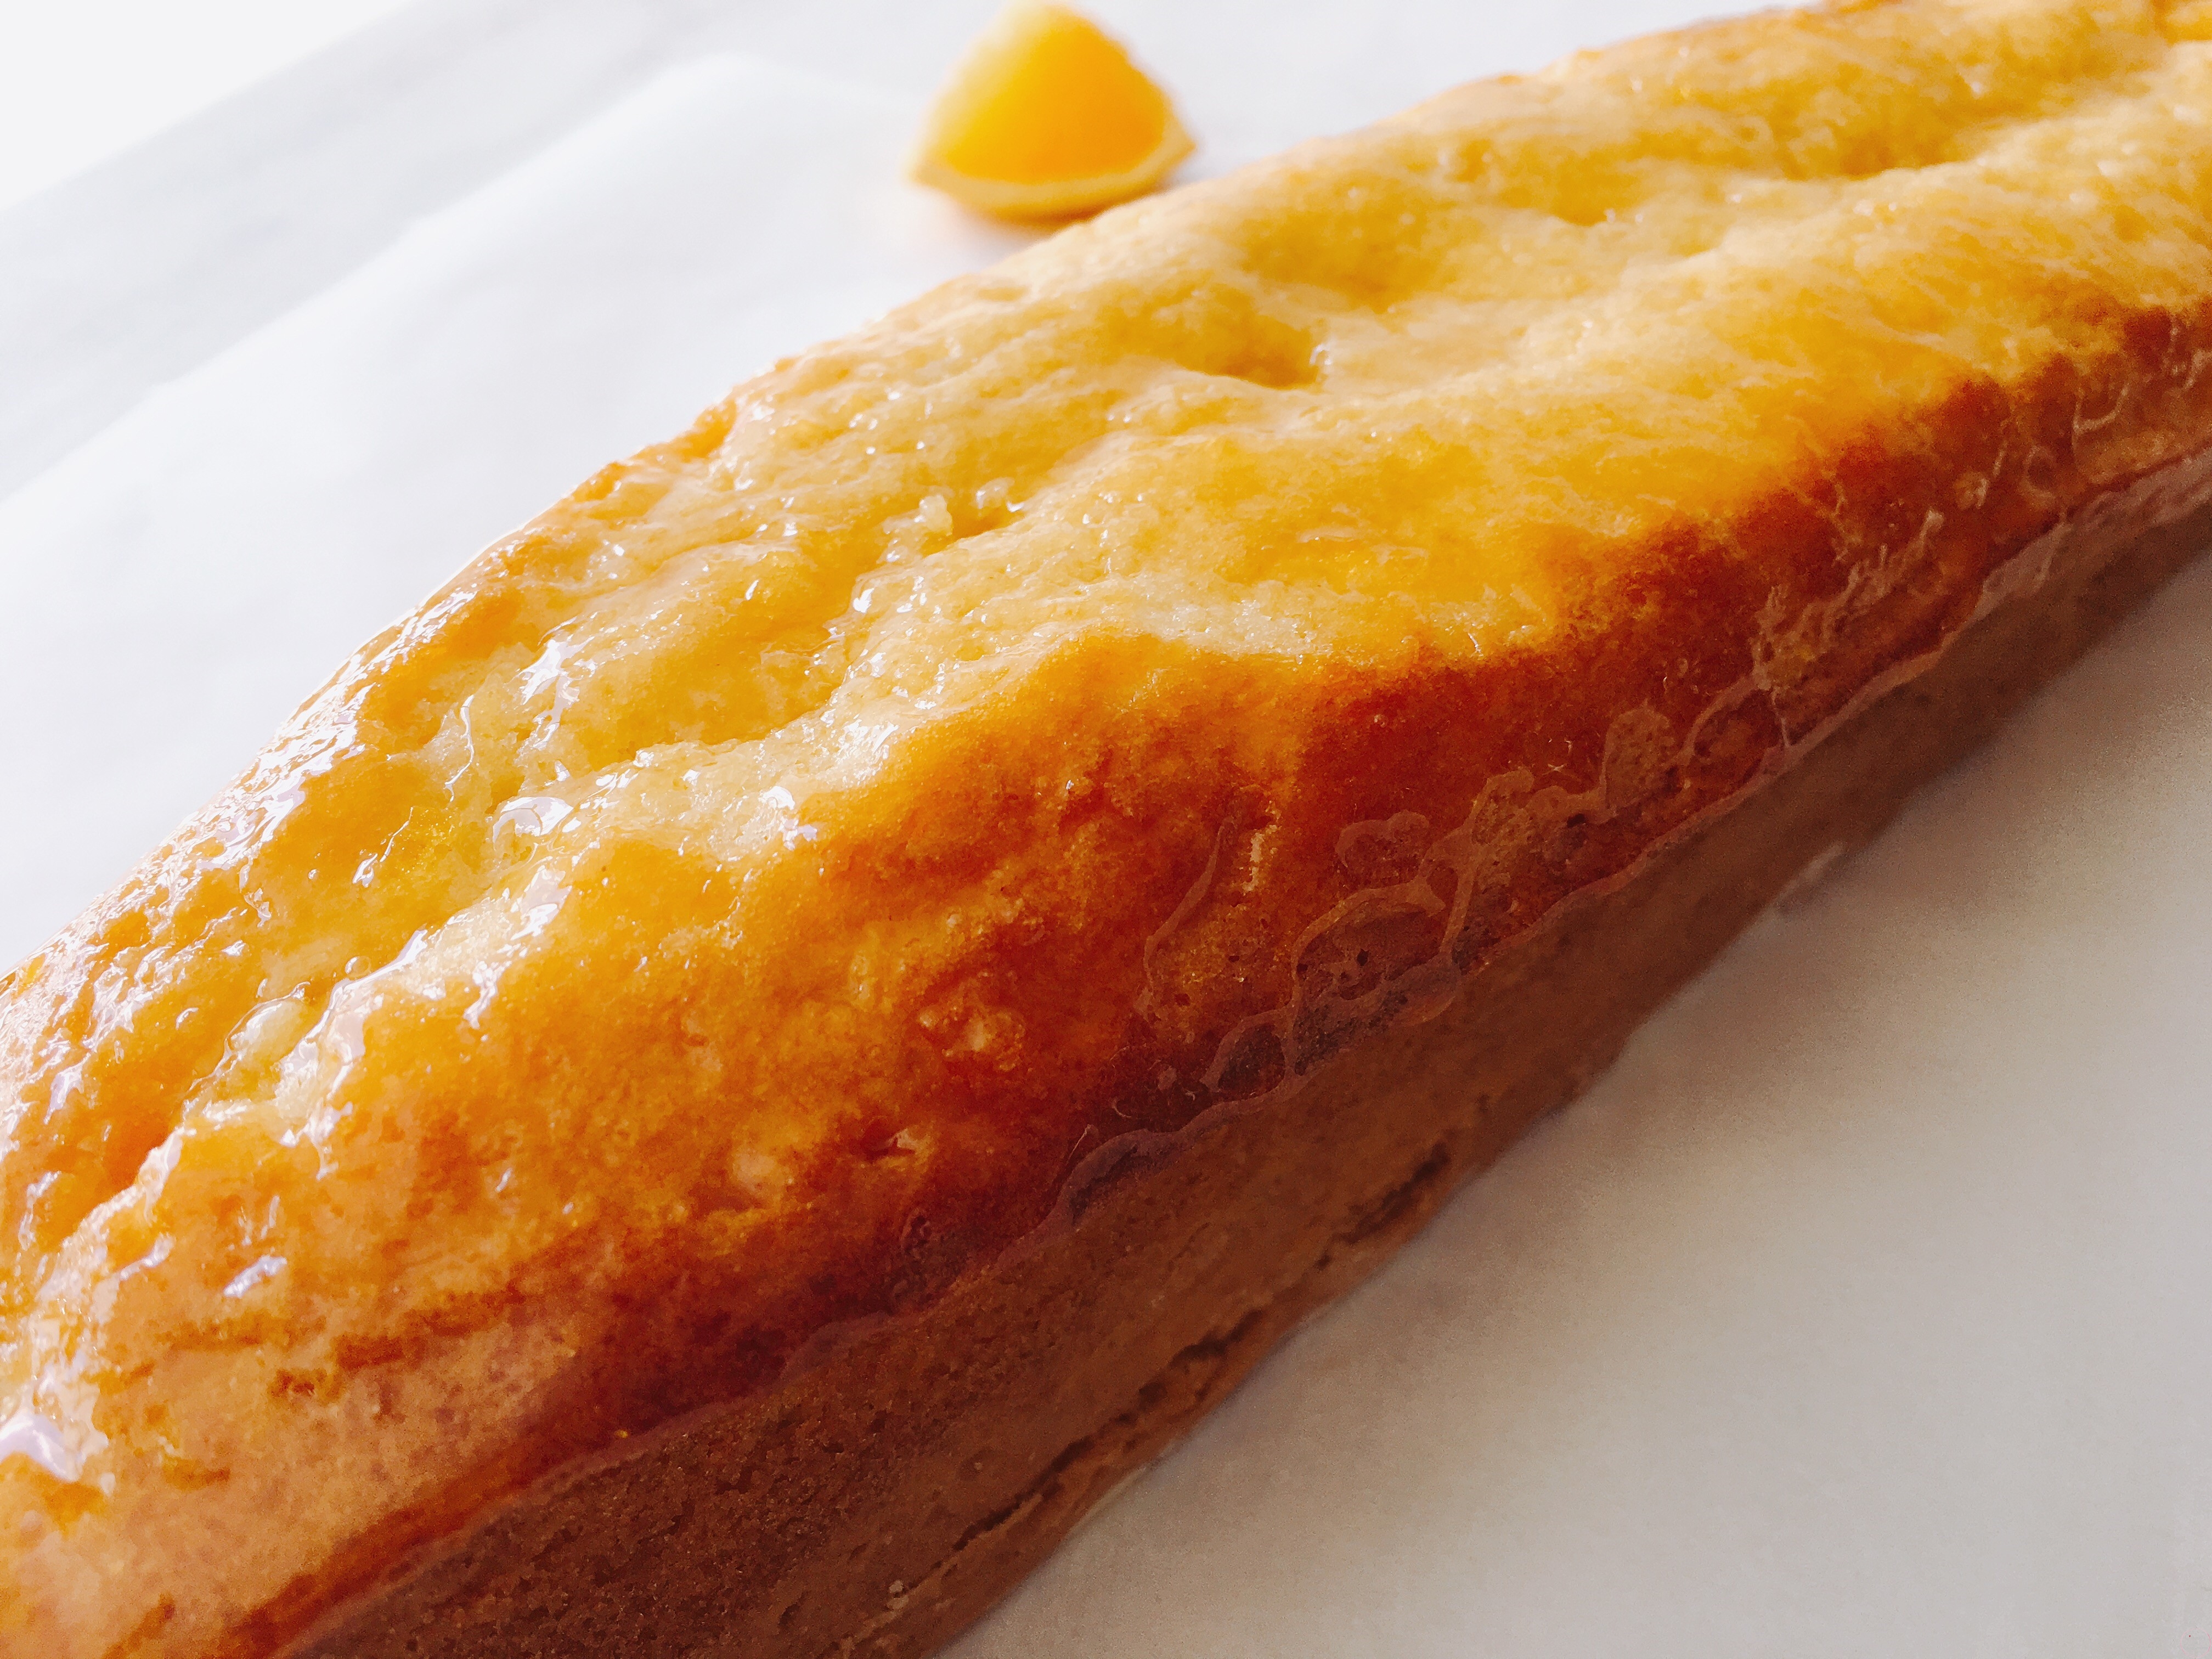 Cake à l'orange - Pierre Hermé - Citronelle and Cardamome